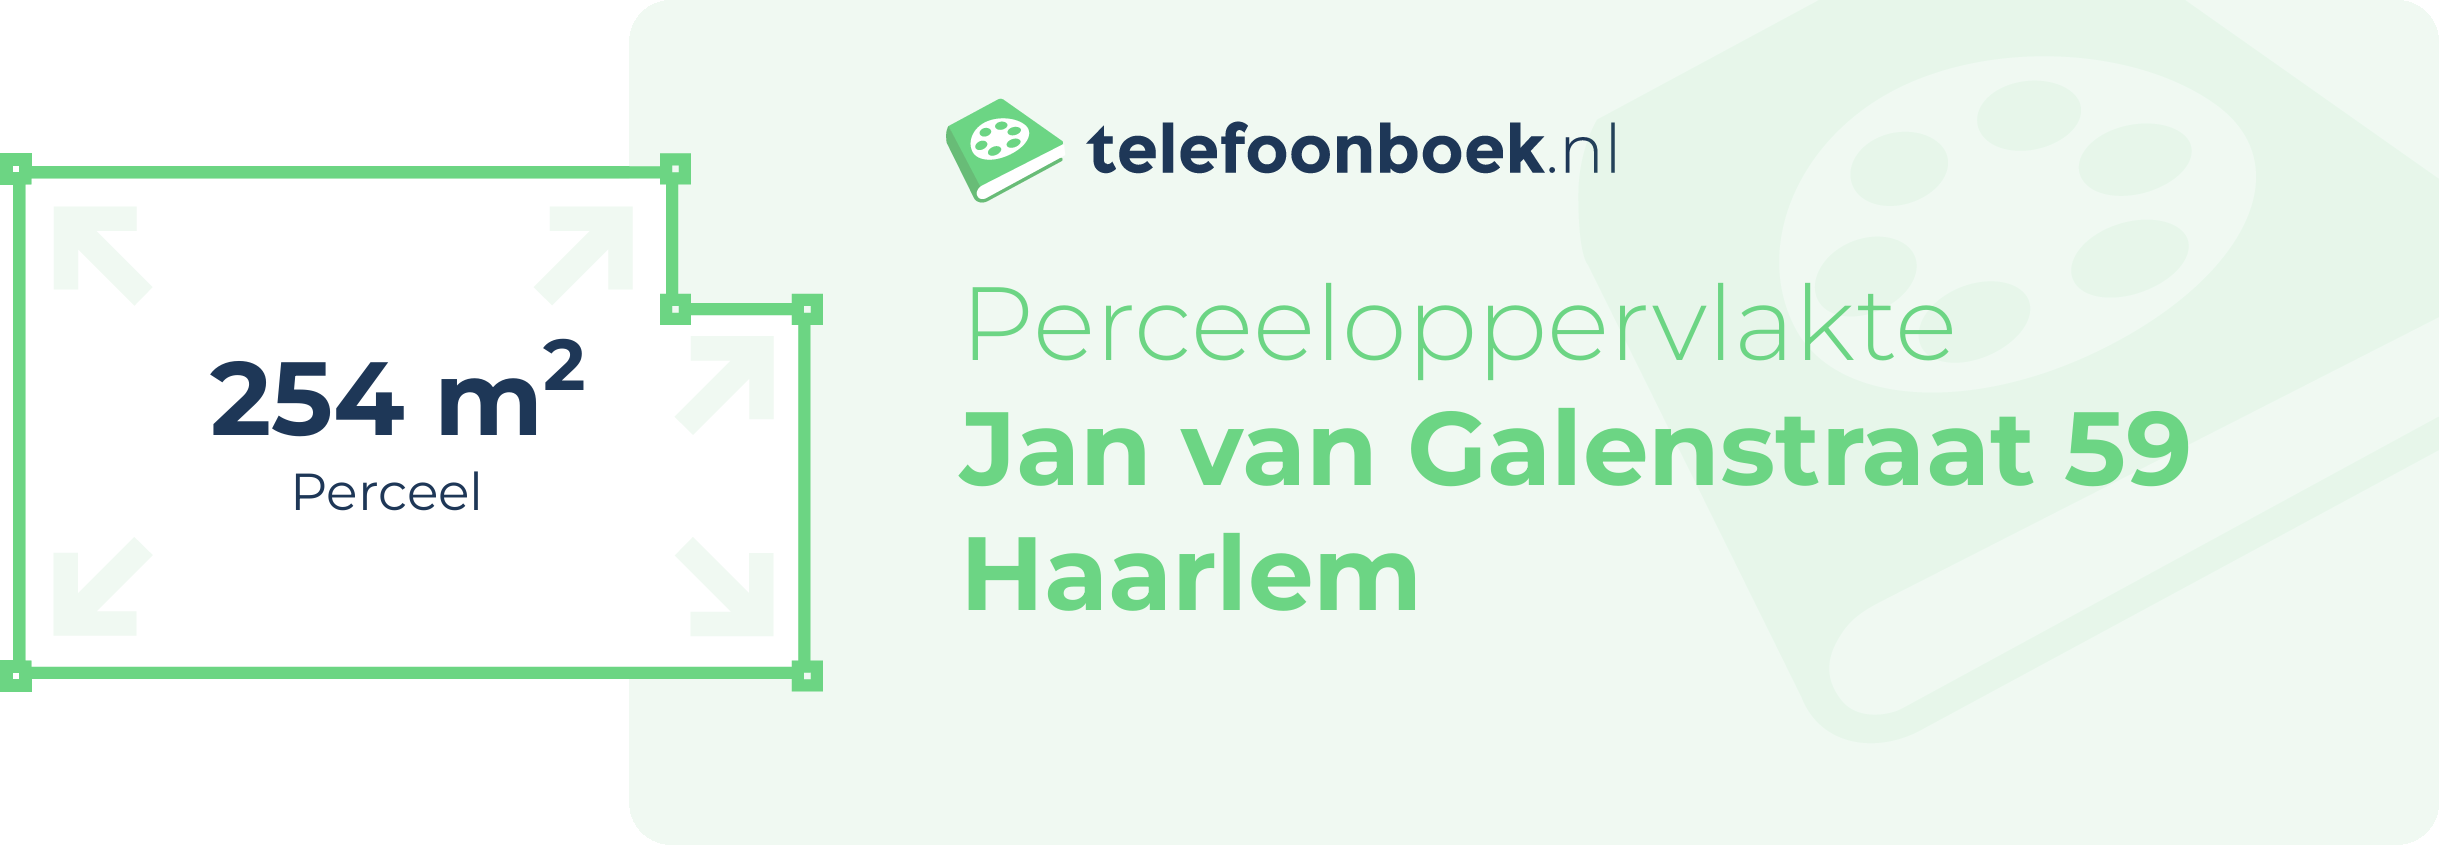 Perceeloppervlakte Jan Van Galenstraat 59 Haarlem